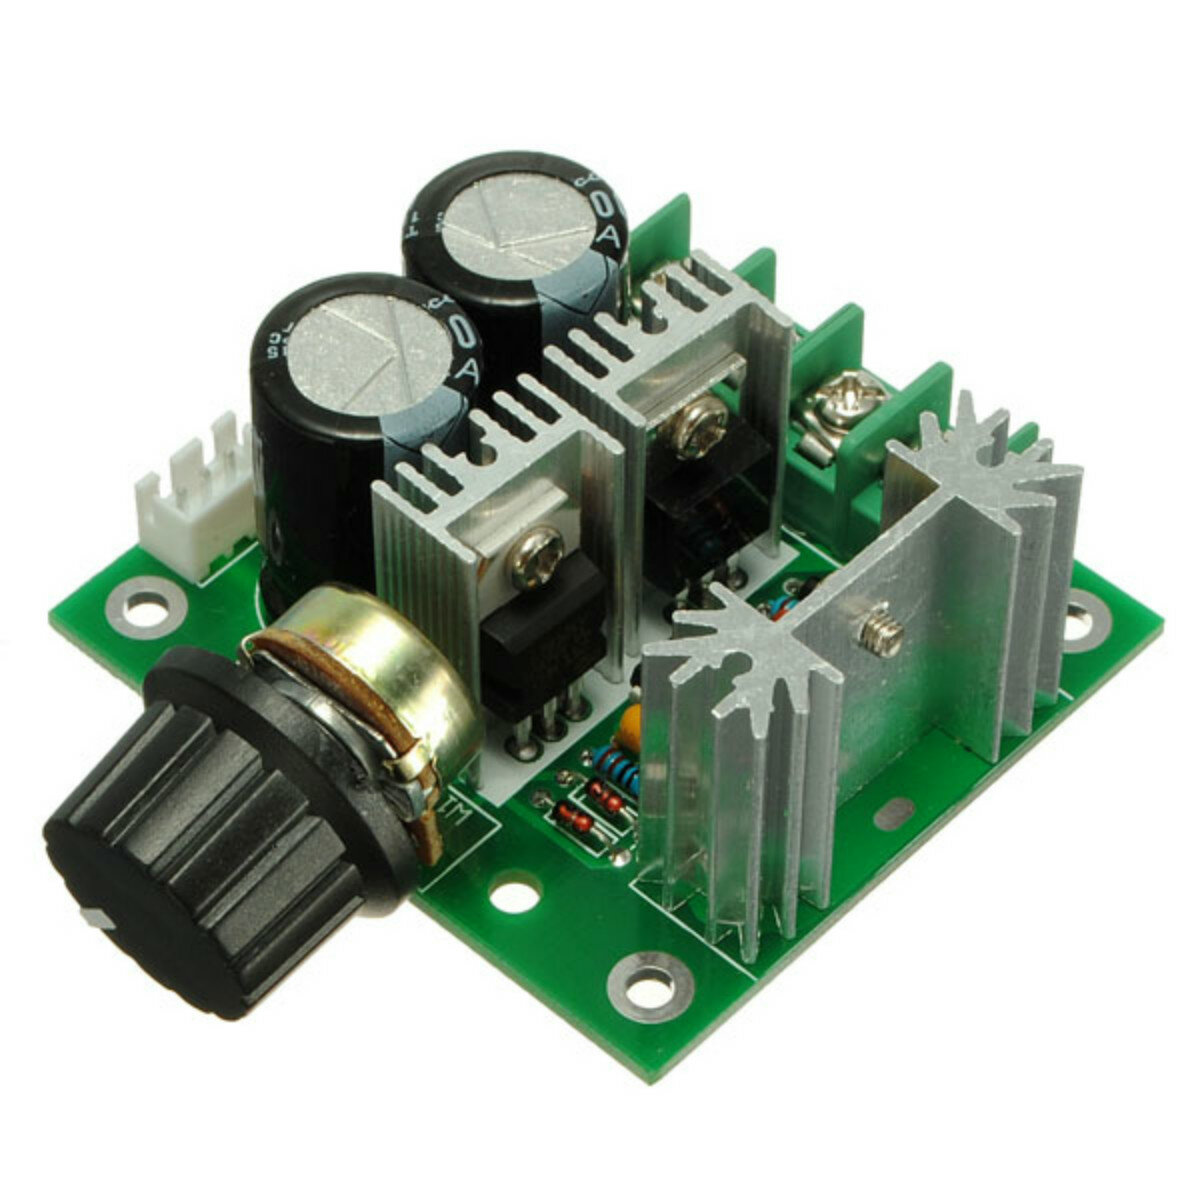 12V-40V 10A Modulation PWM DC Motor Speed Control Switch Governor